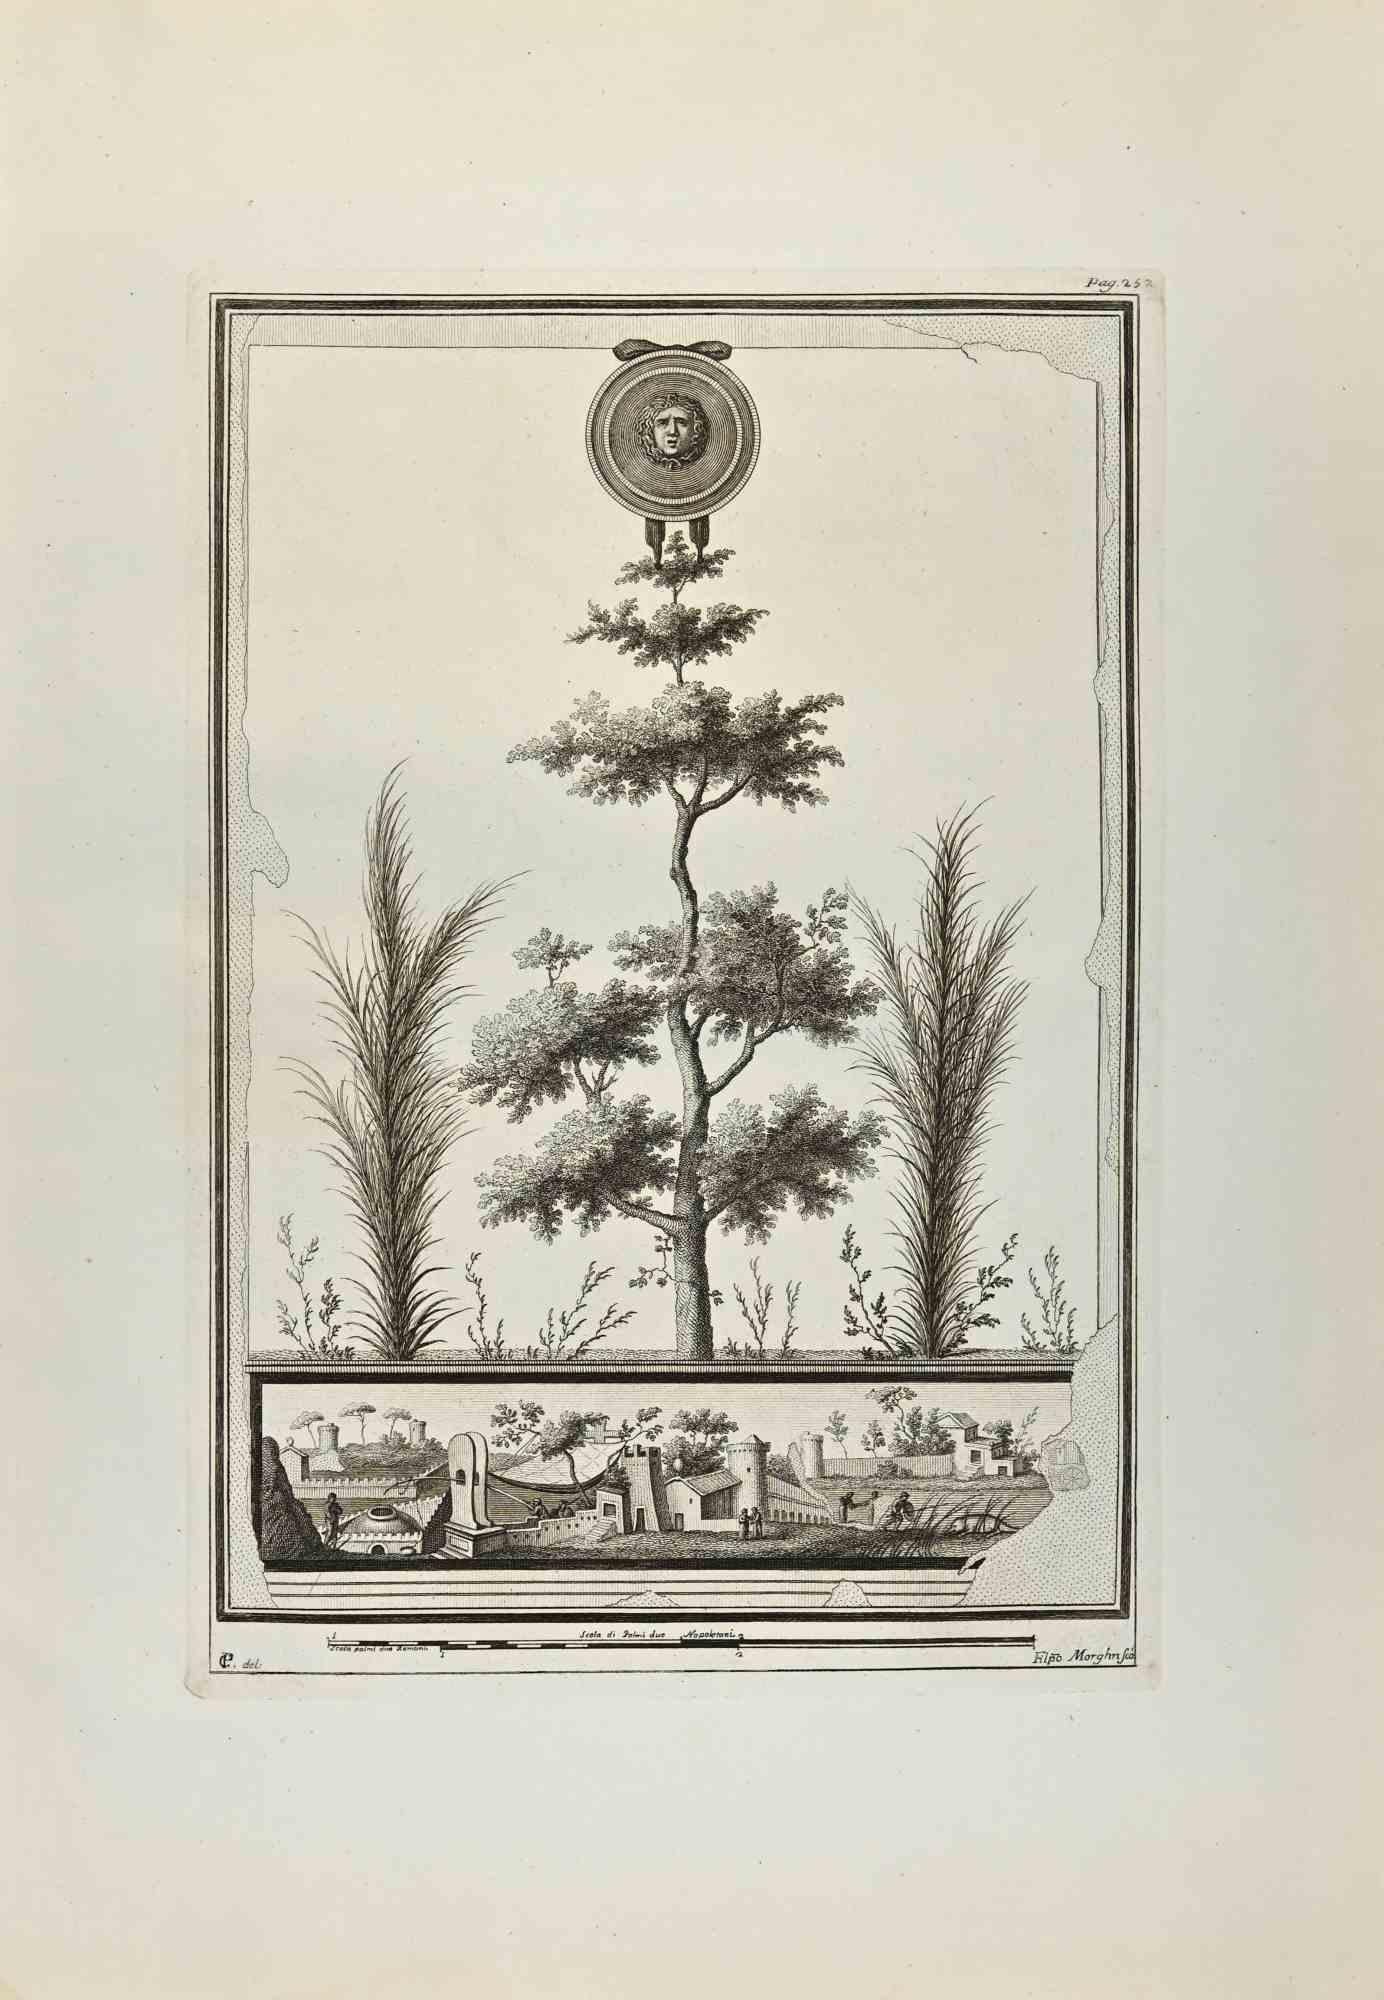 Medusa Head And Roman Garden aus "Antiquities of Herculaneum" ist eine Radierung auf Papier von Filippo Morghen aus dem 18. Jahrhundert.

Signiert auf der Platte.

Guter Zustand mit einigen Faltungen.

Die Radierung gehört zu der Druckserie